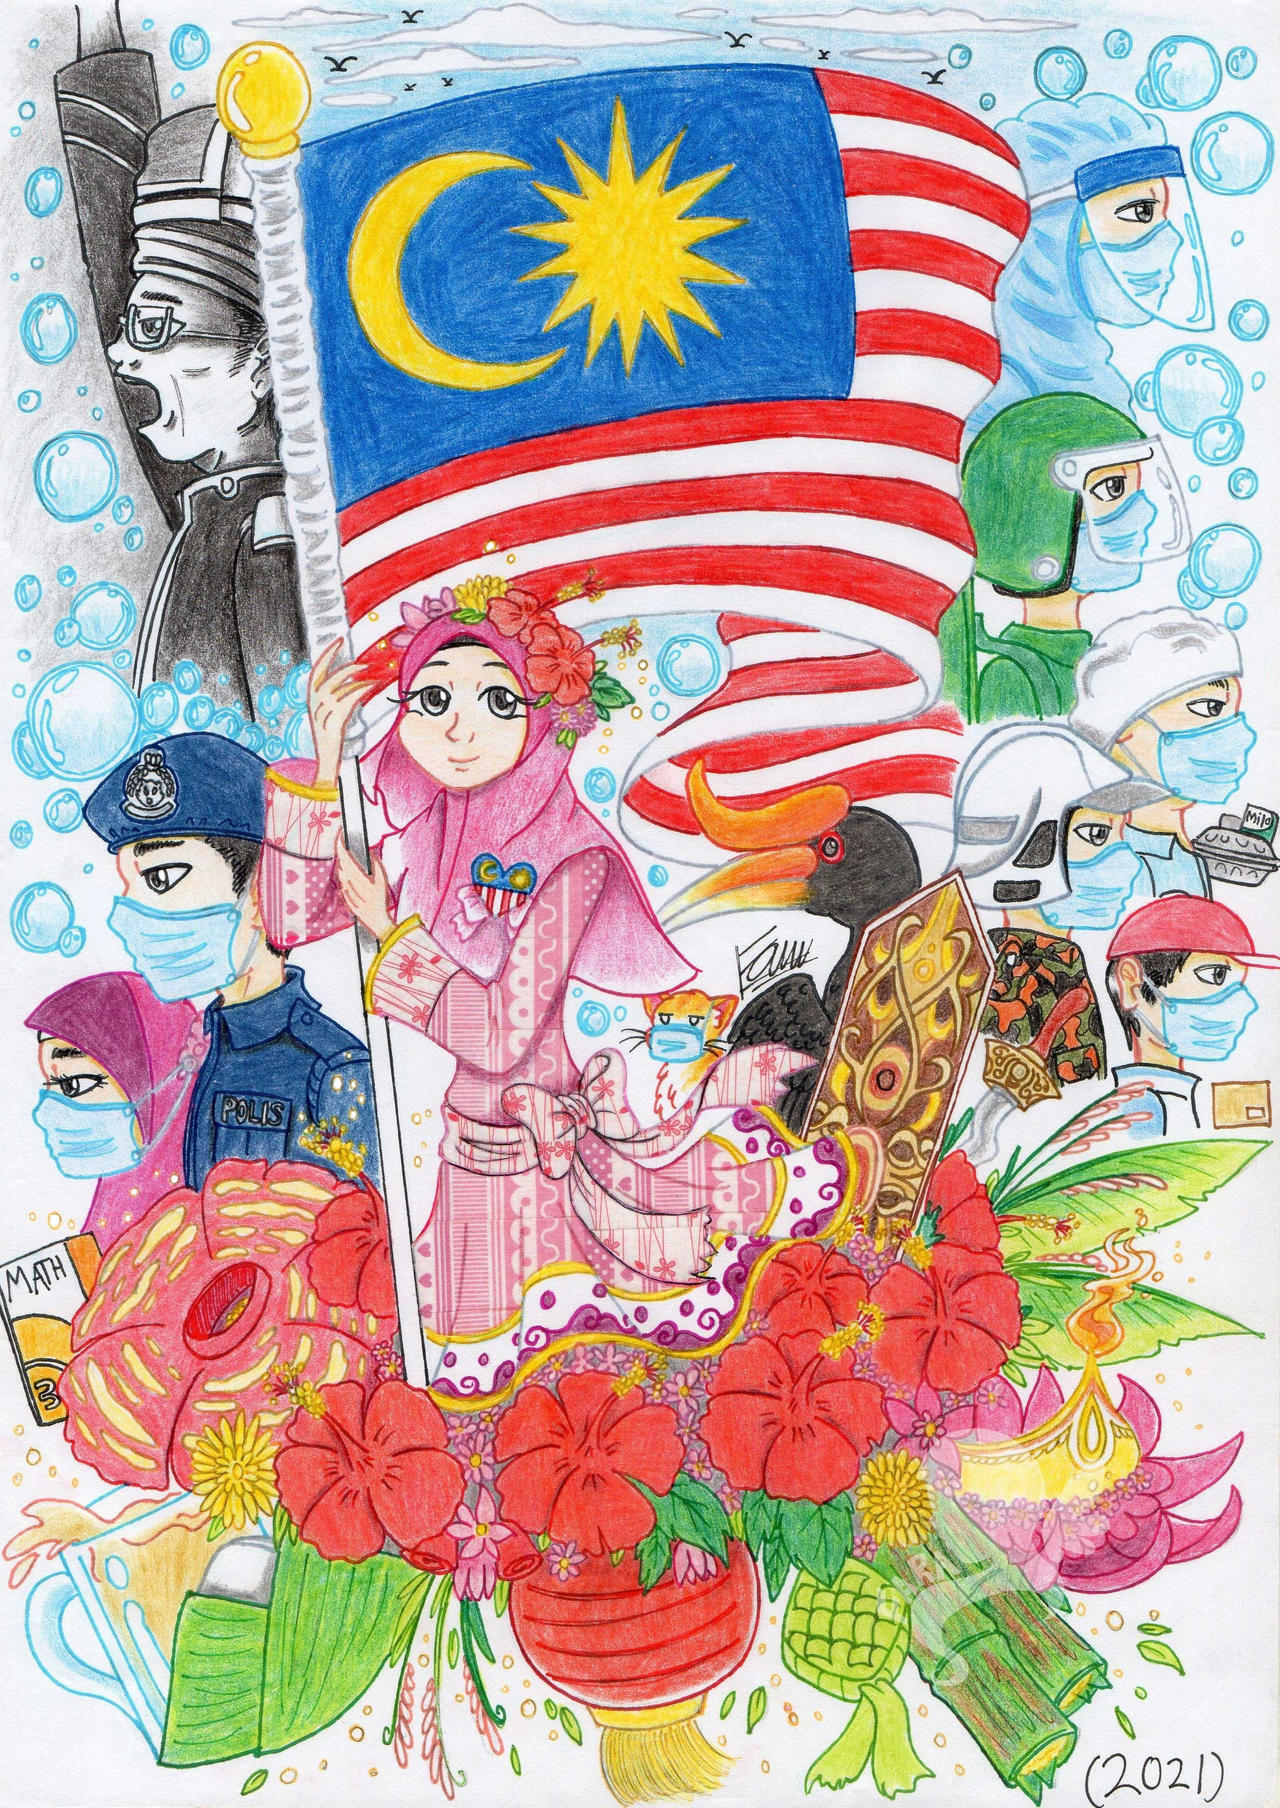 Poster hari malaysia 2021